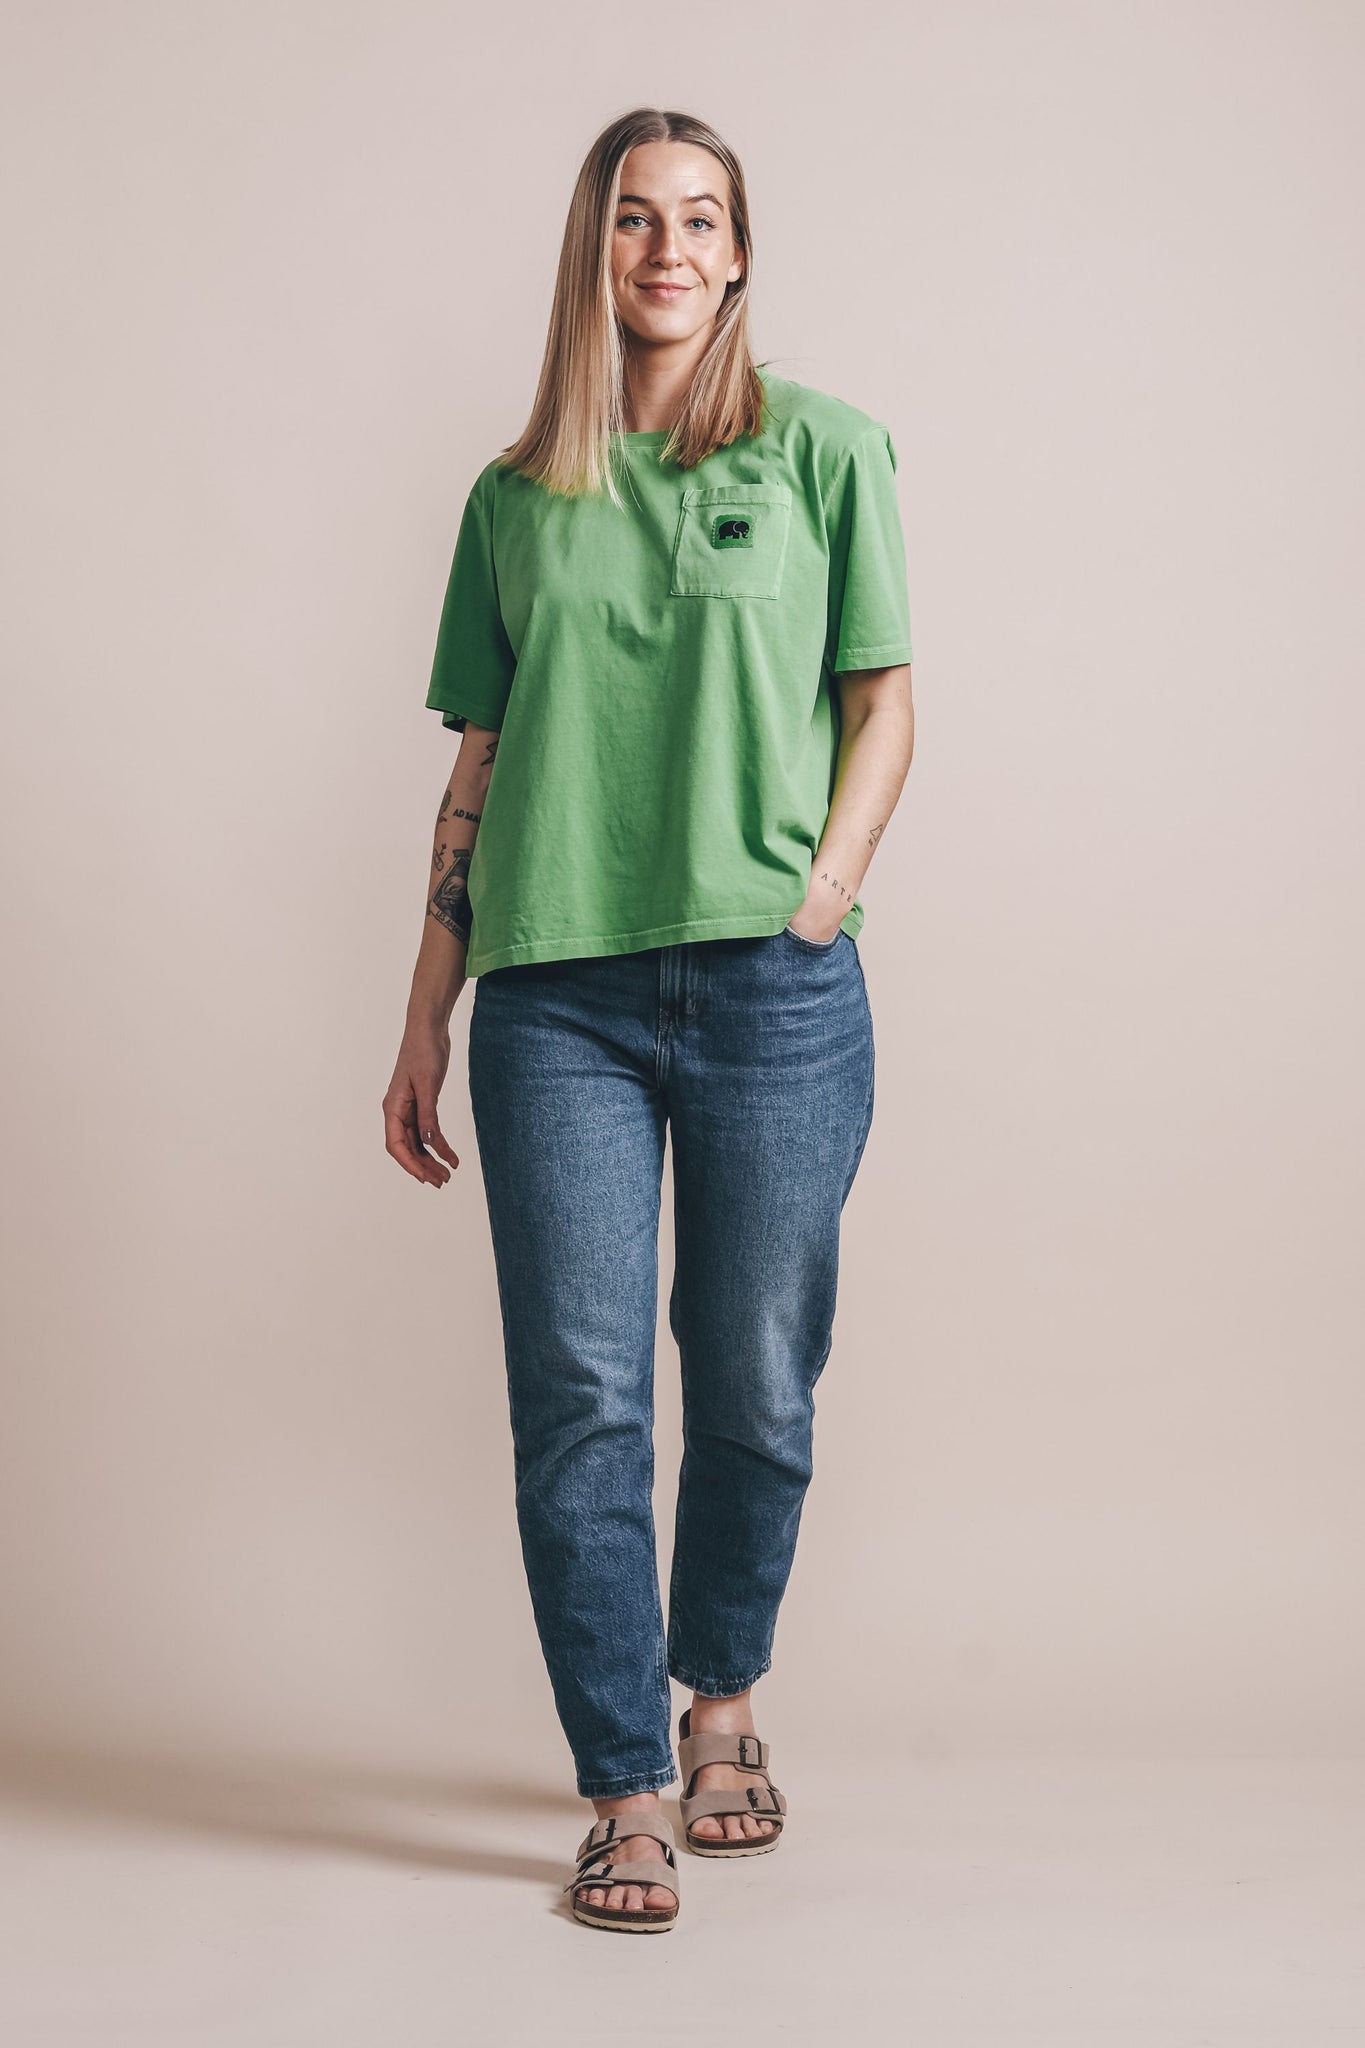 Camiseta Mujer Bolsillo Menorca Meadow Green